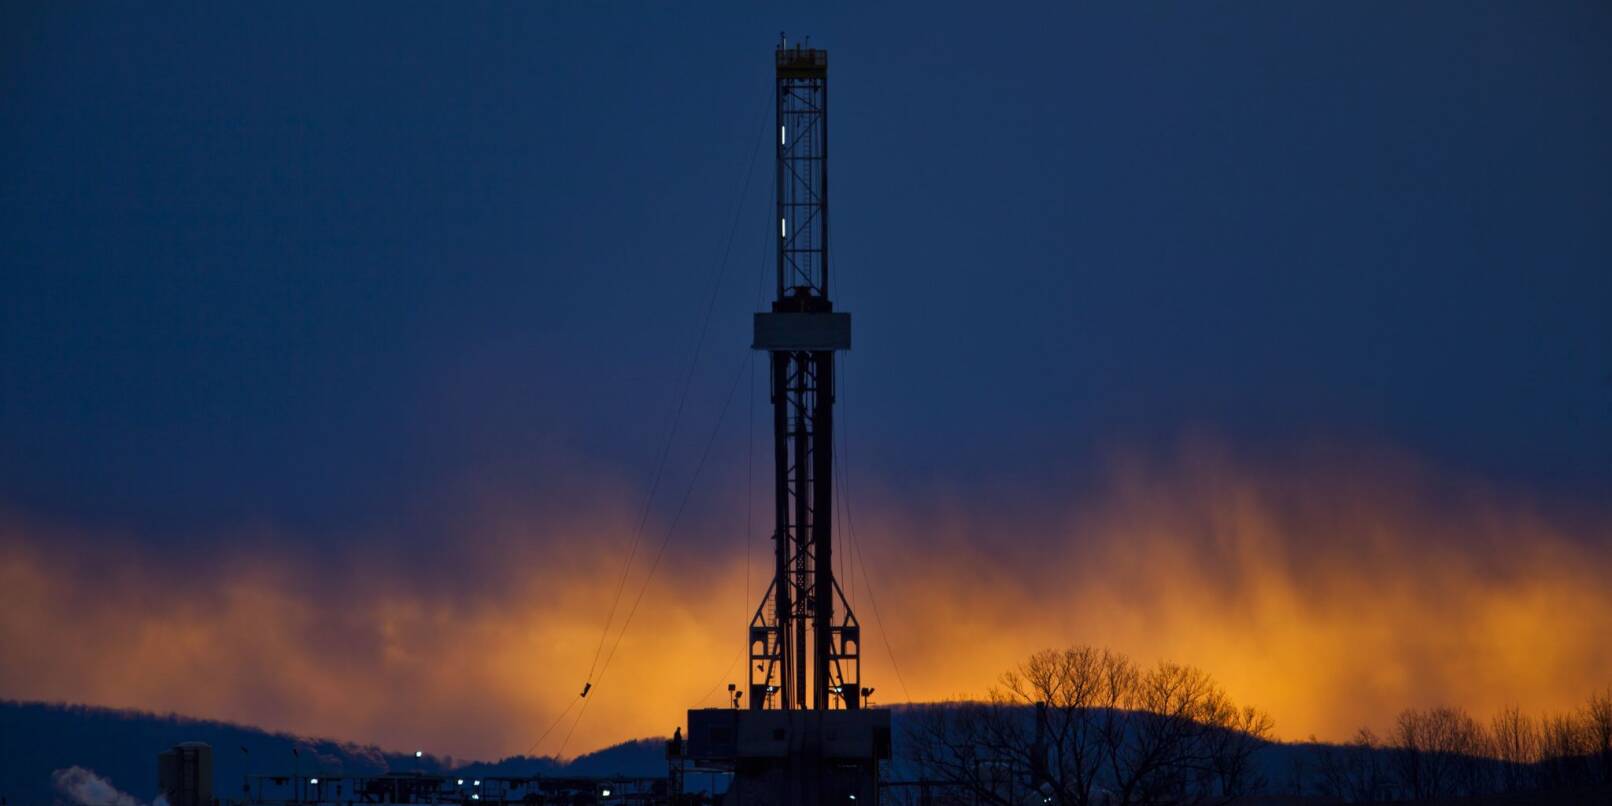 Diese Ölförderplattform im us-amerikanischen Tunkhannock arbeitet nach dem Prinzip des Fracking.